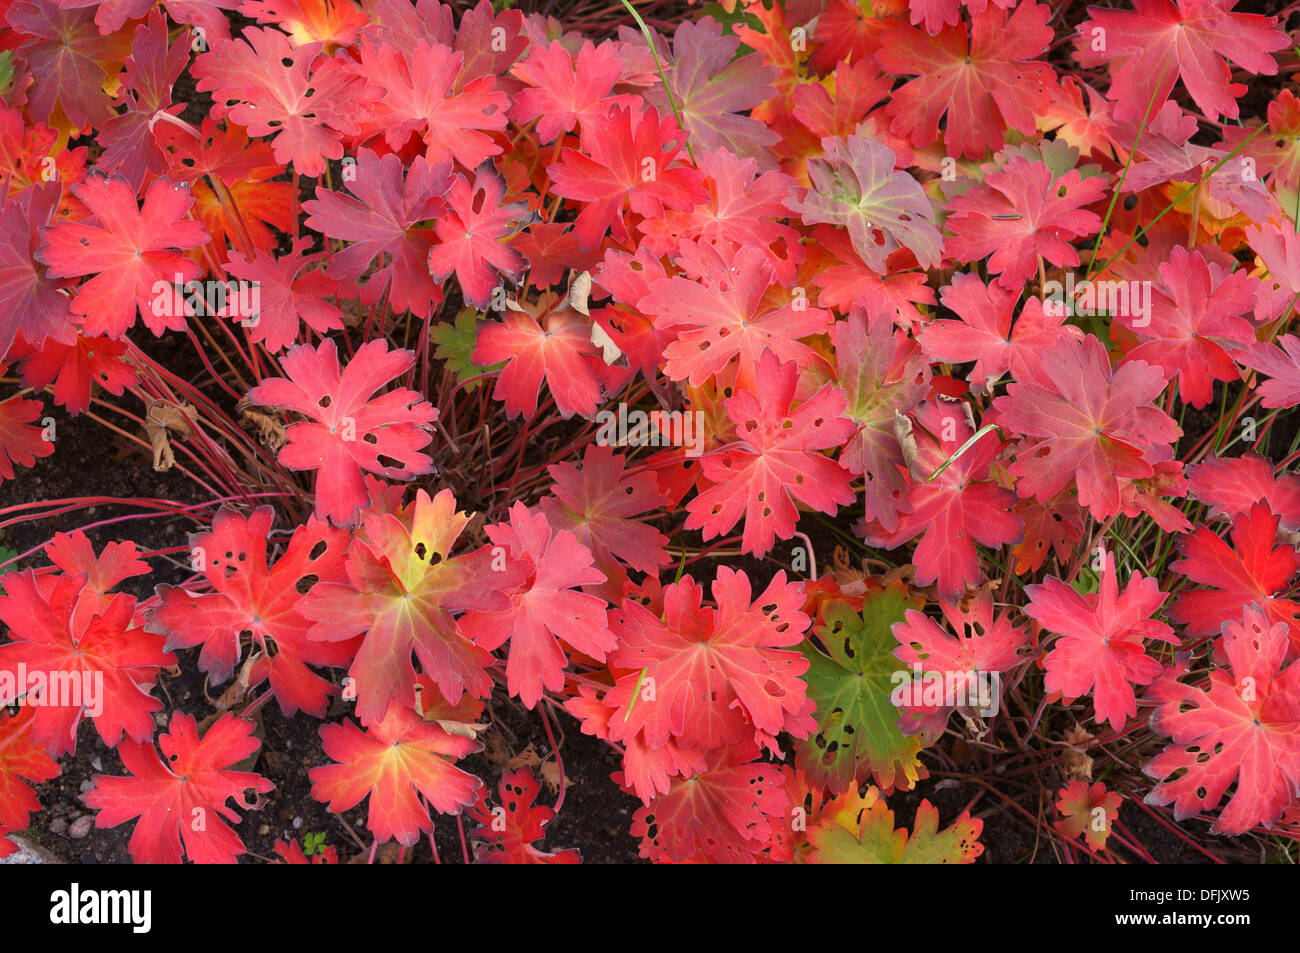 Geranium wlassovianum leaves turned red in autumn Stock Photo